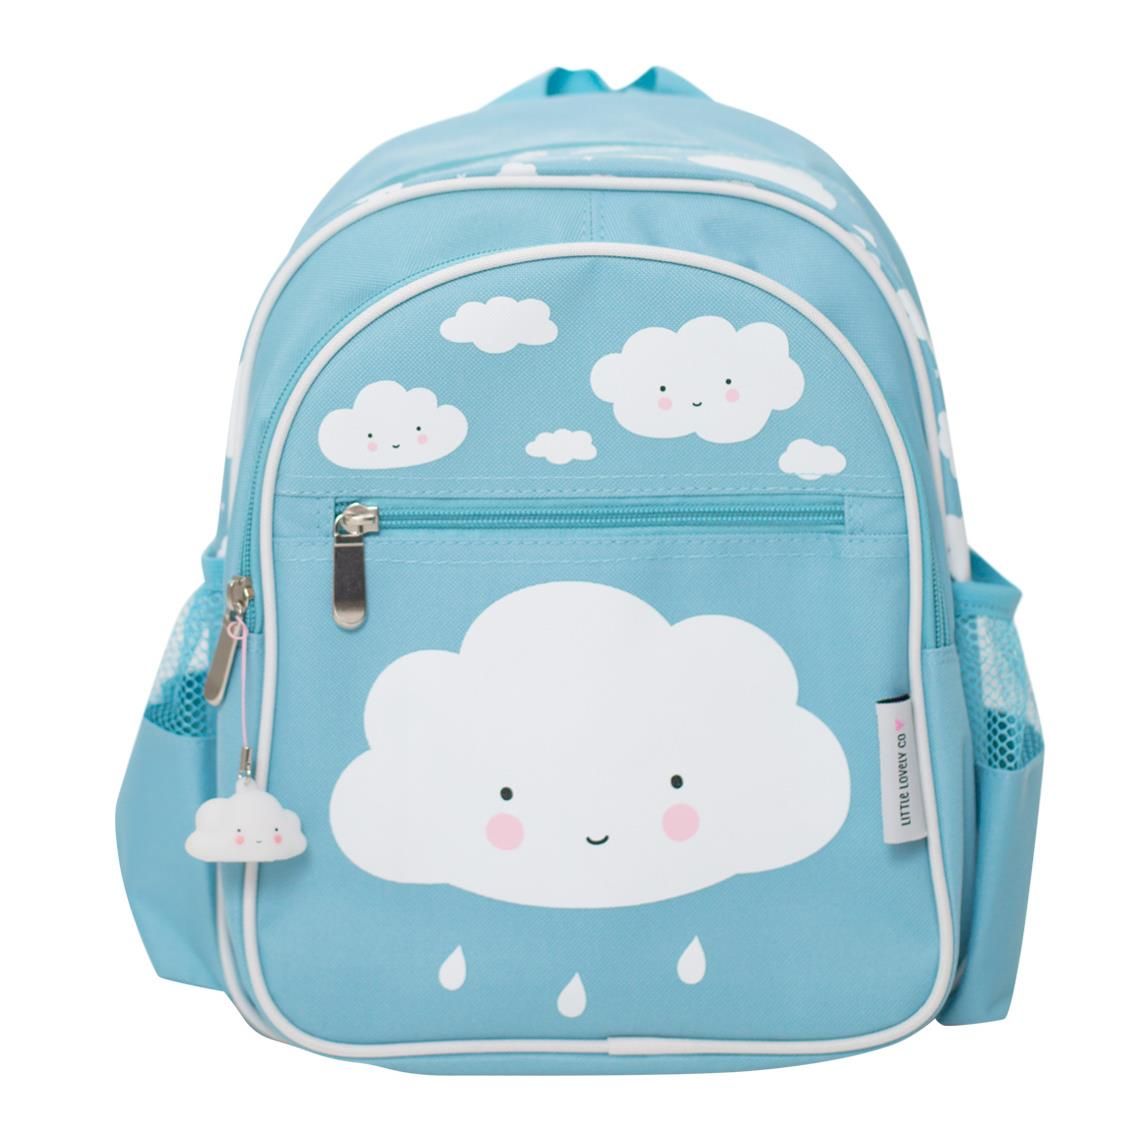 Рюкзак с облаком A Little Lovely Company, голубой, большой